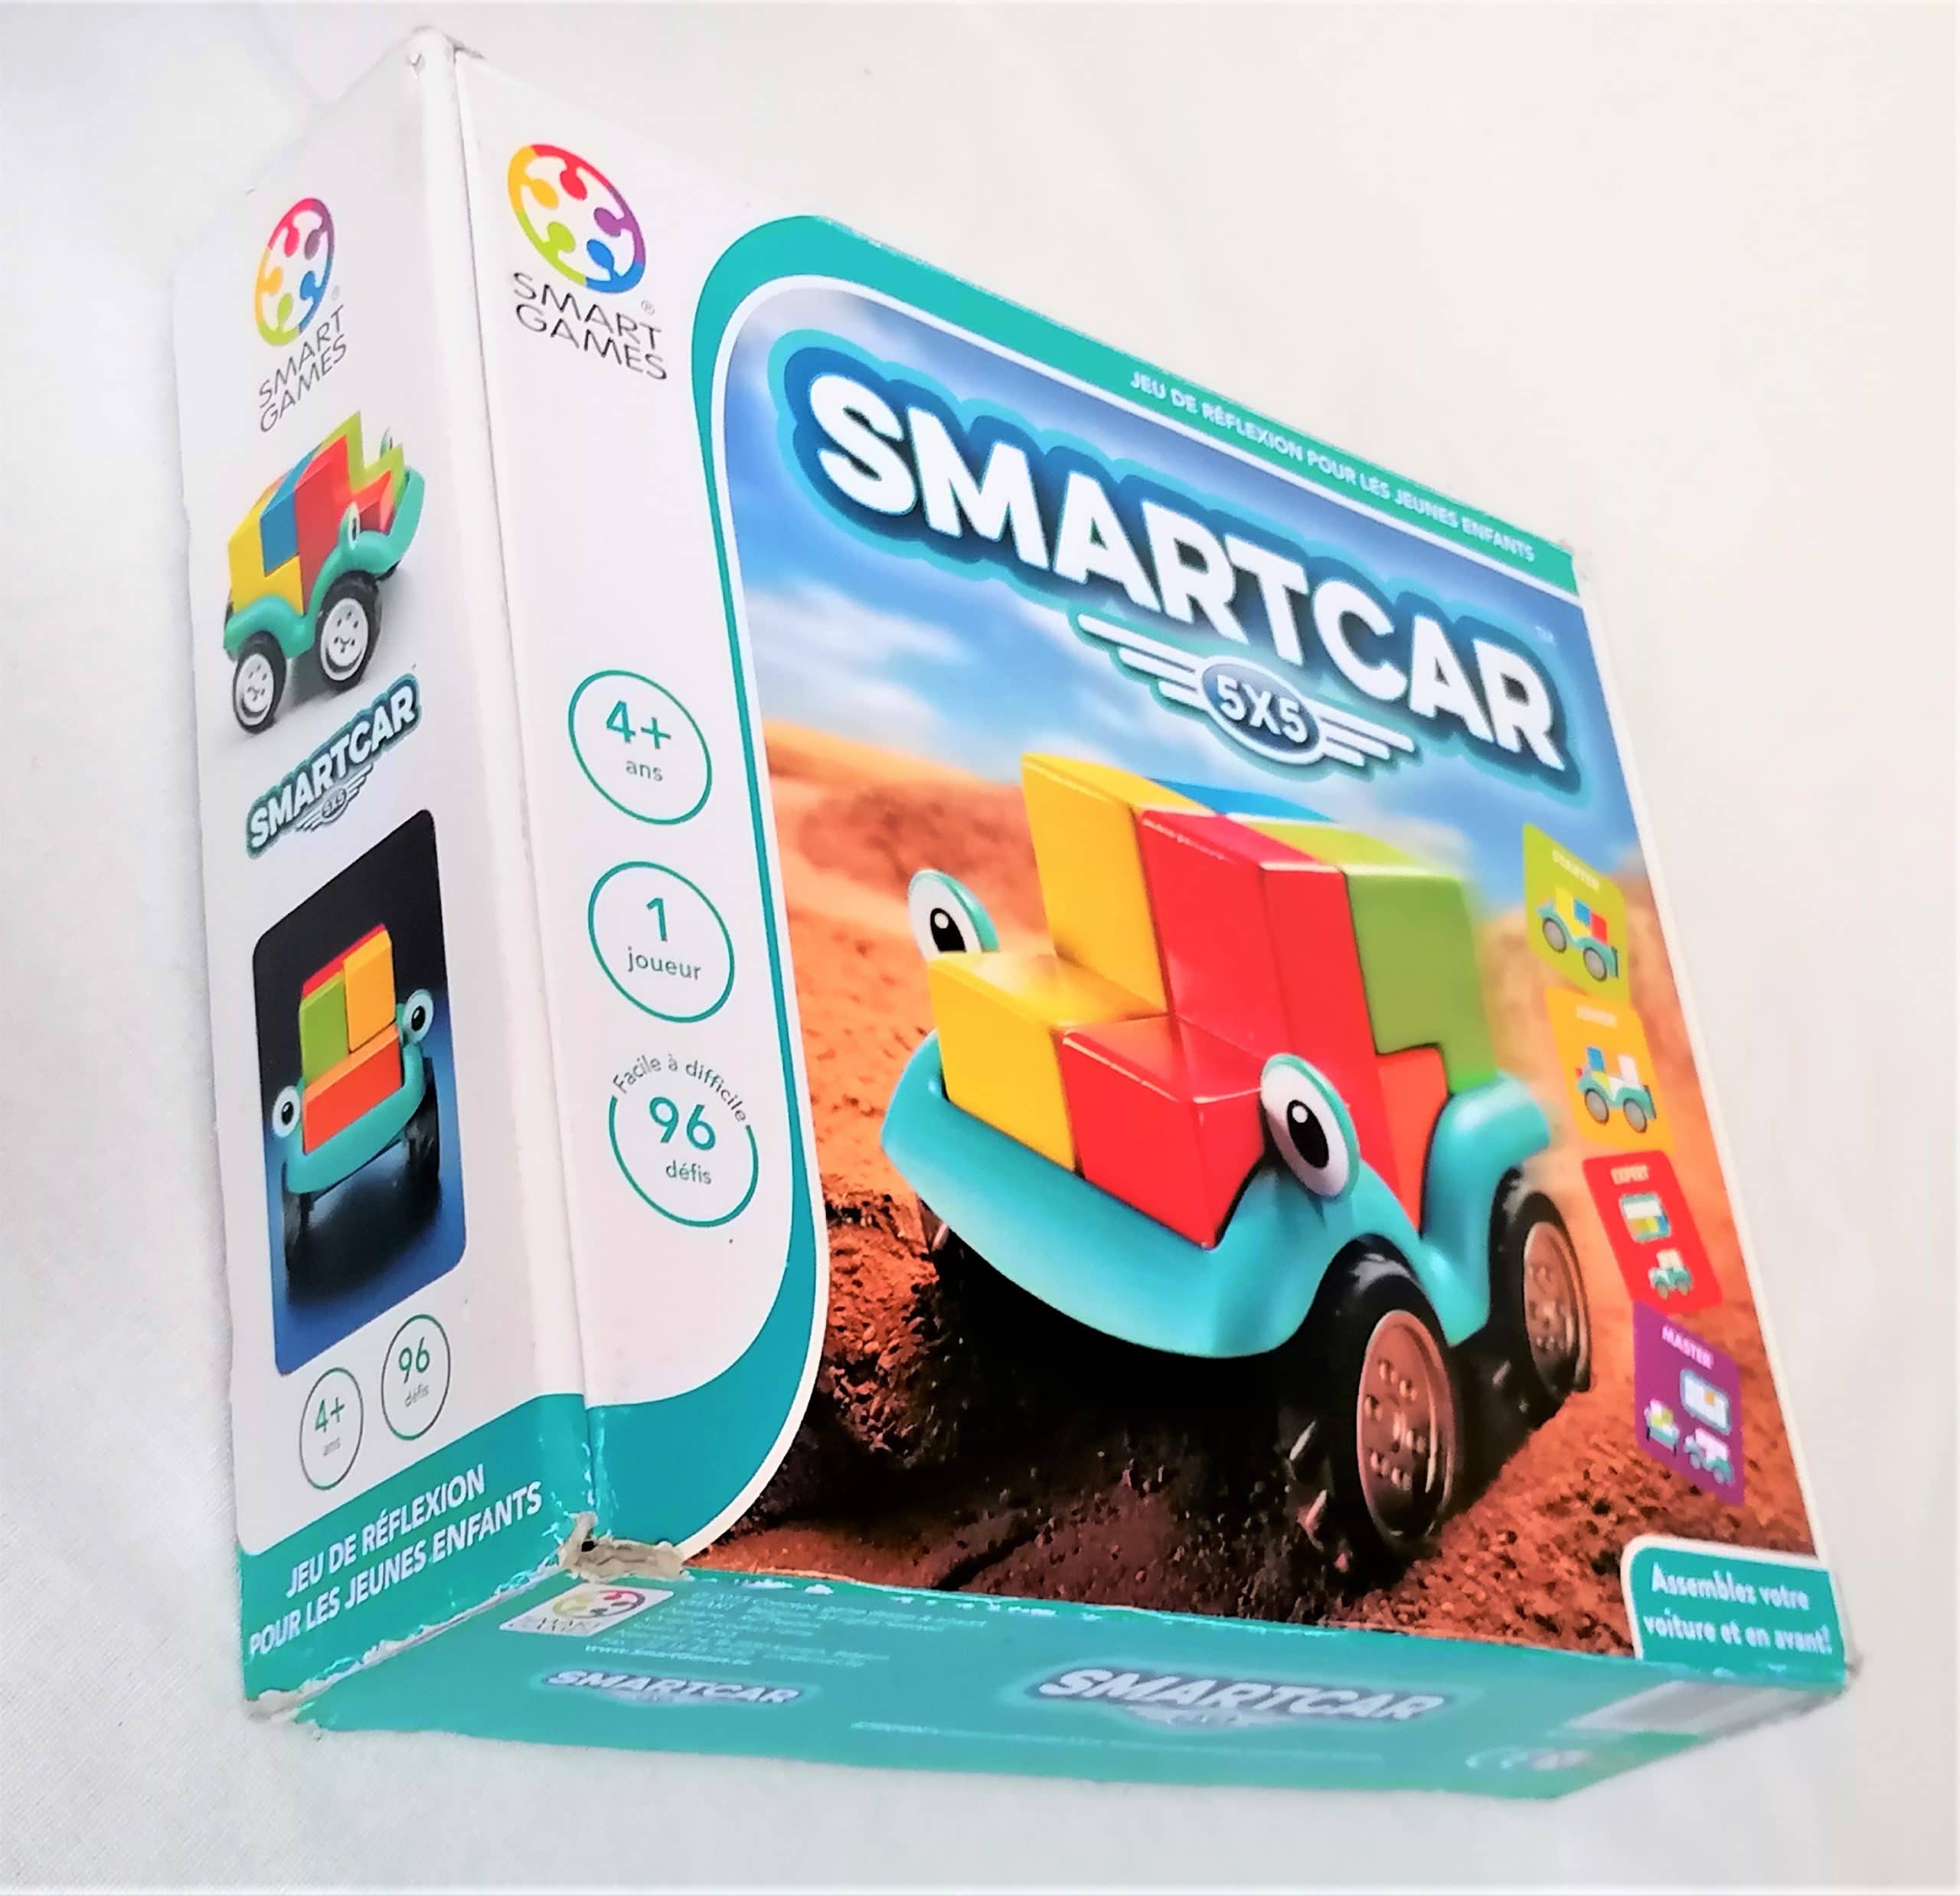 Smartcar 5x5 SmartGames